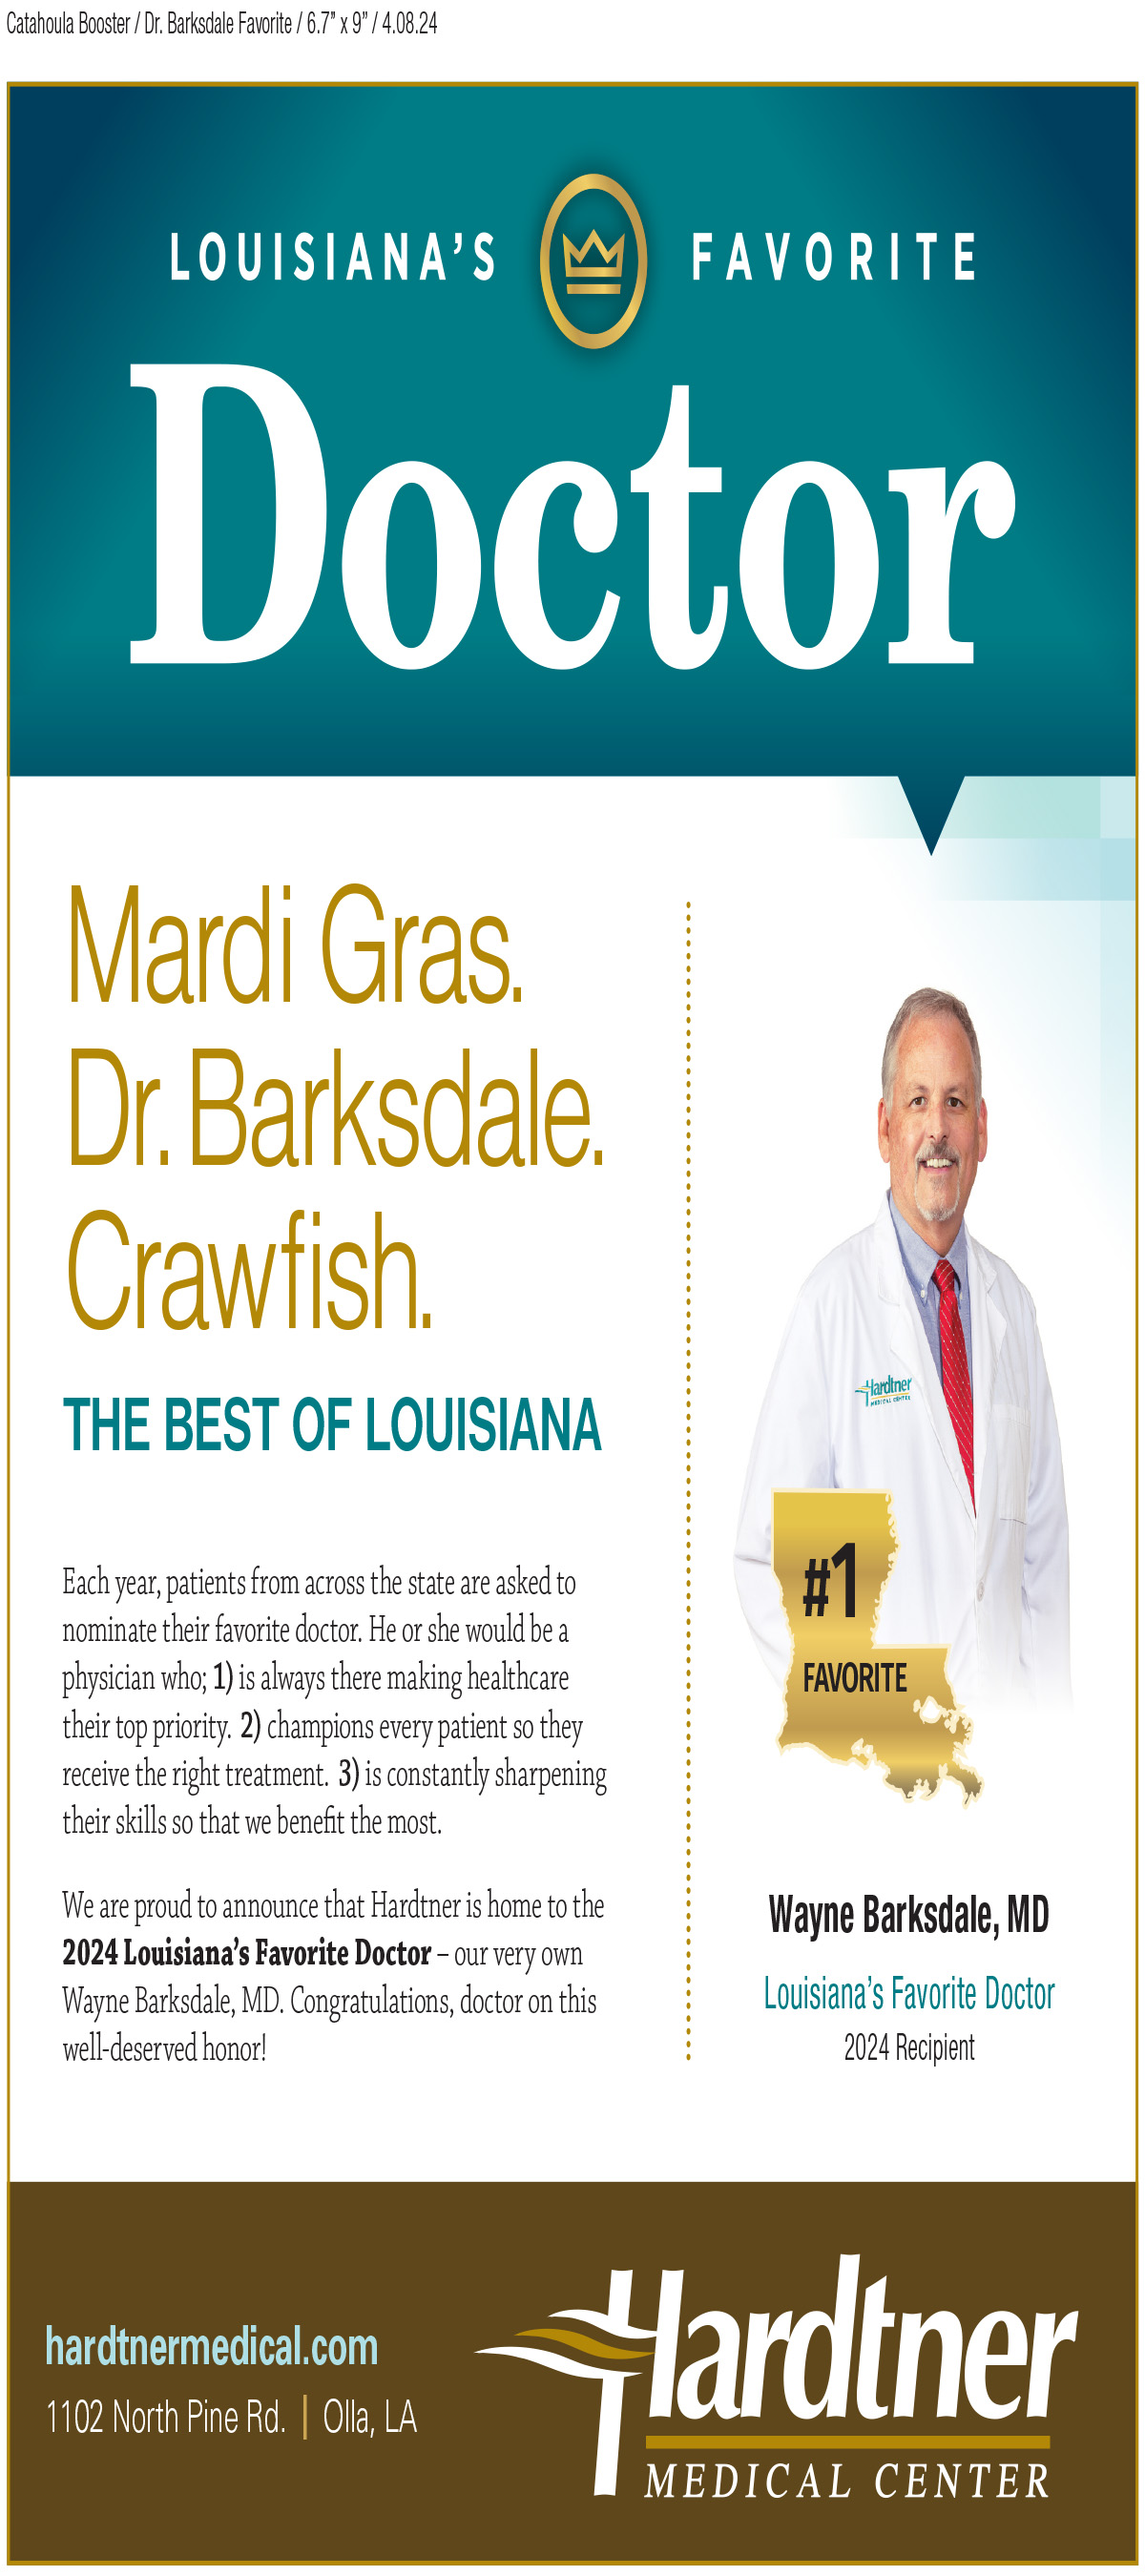 Mardi Gras. Dr. Barksdale. Crawfish.